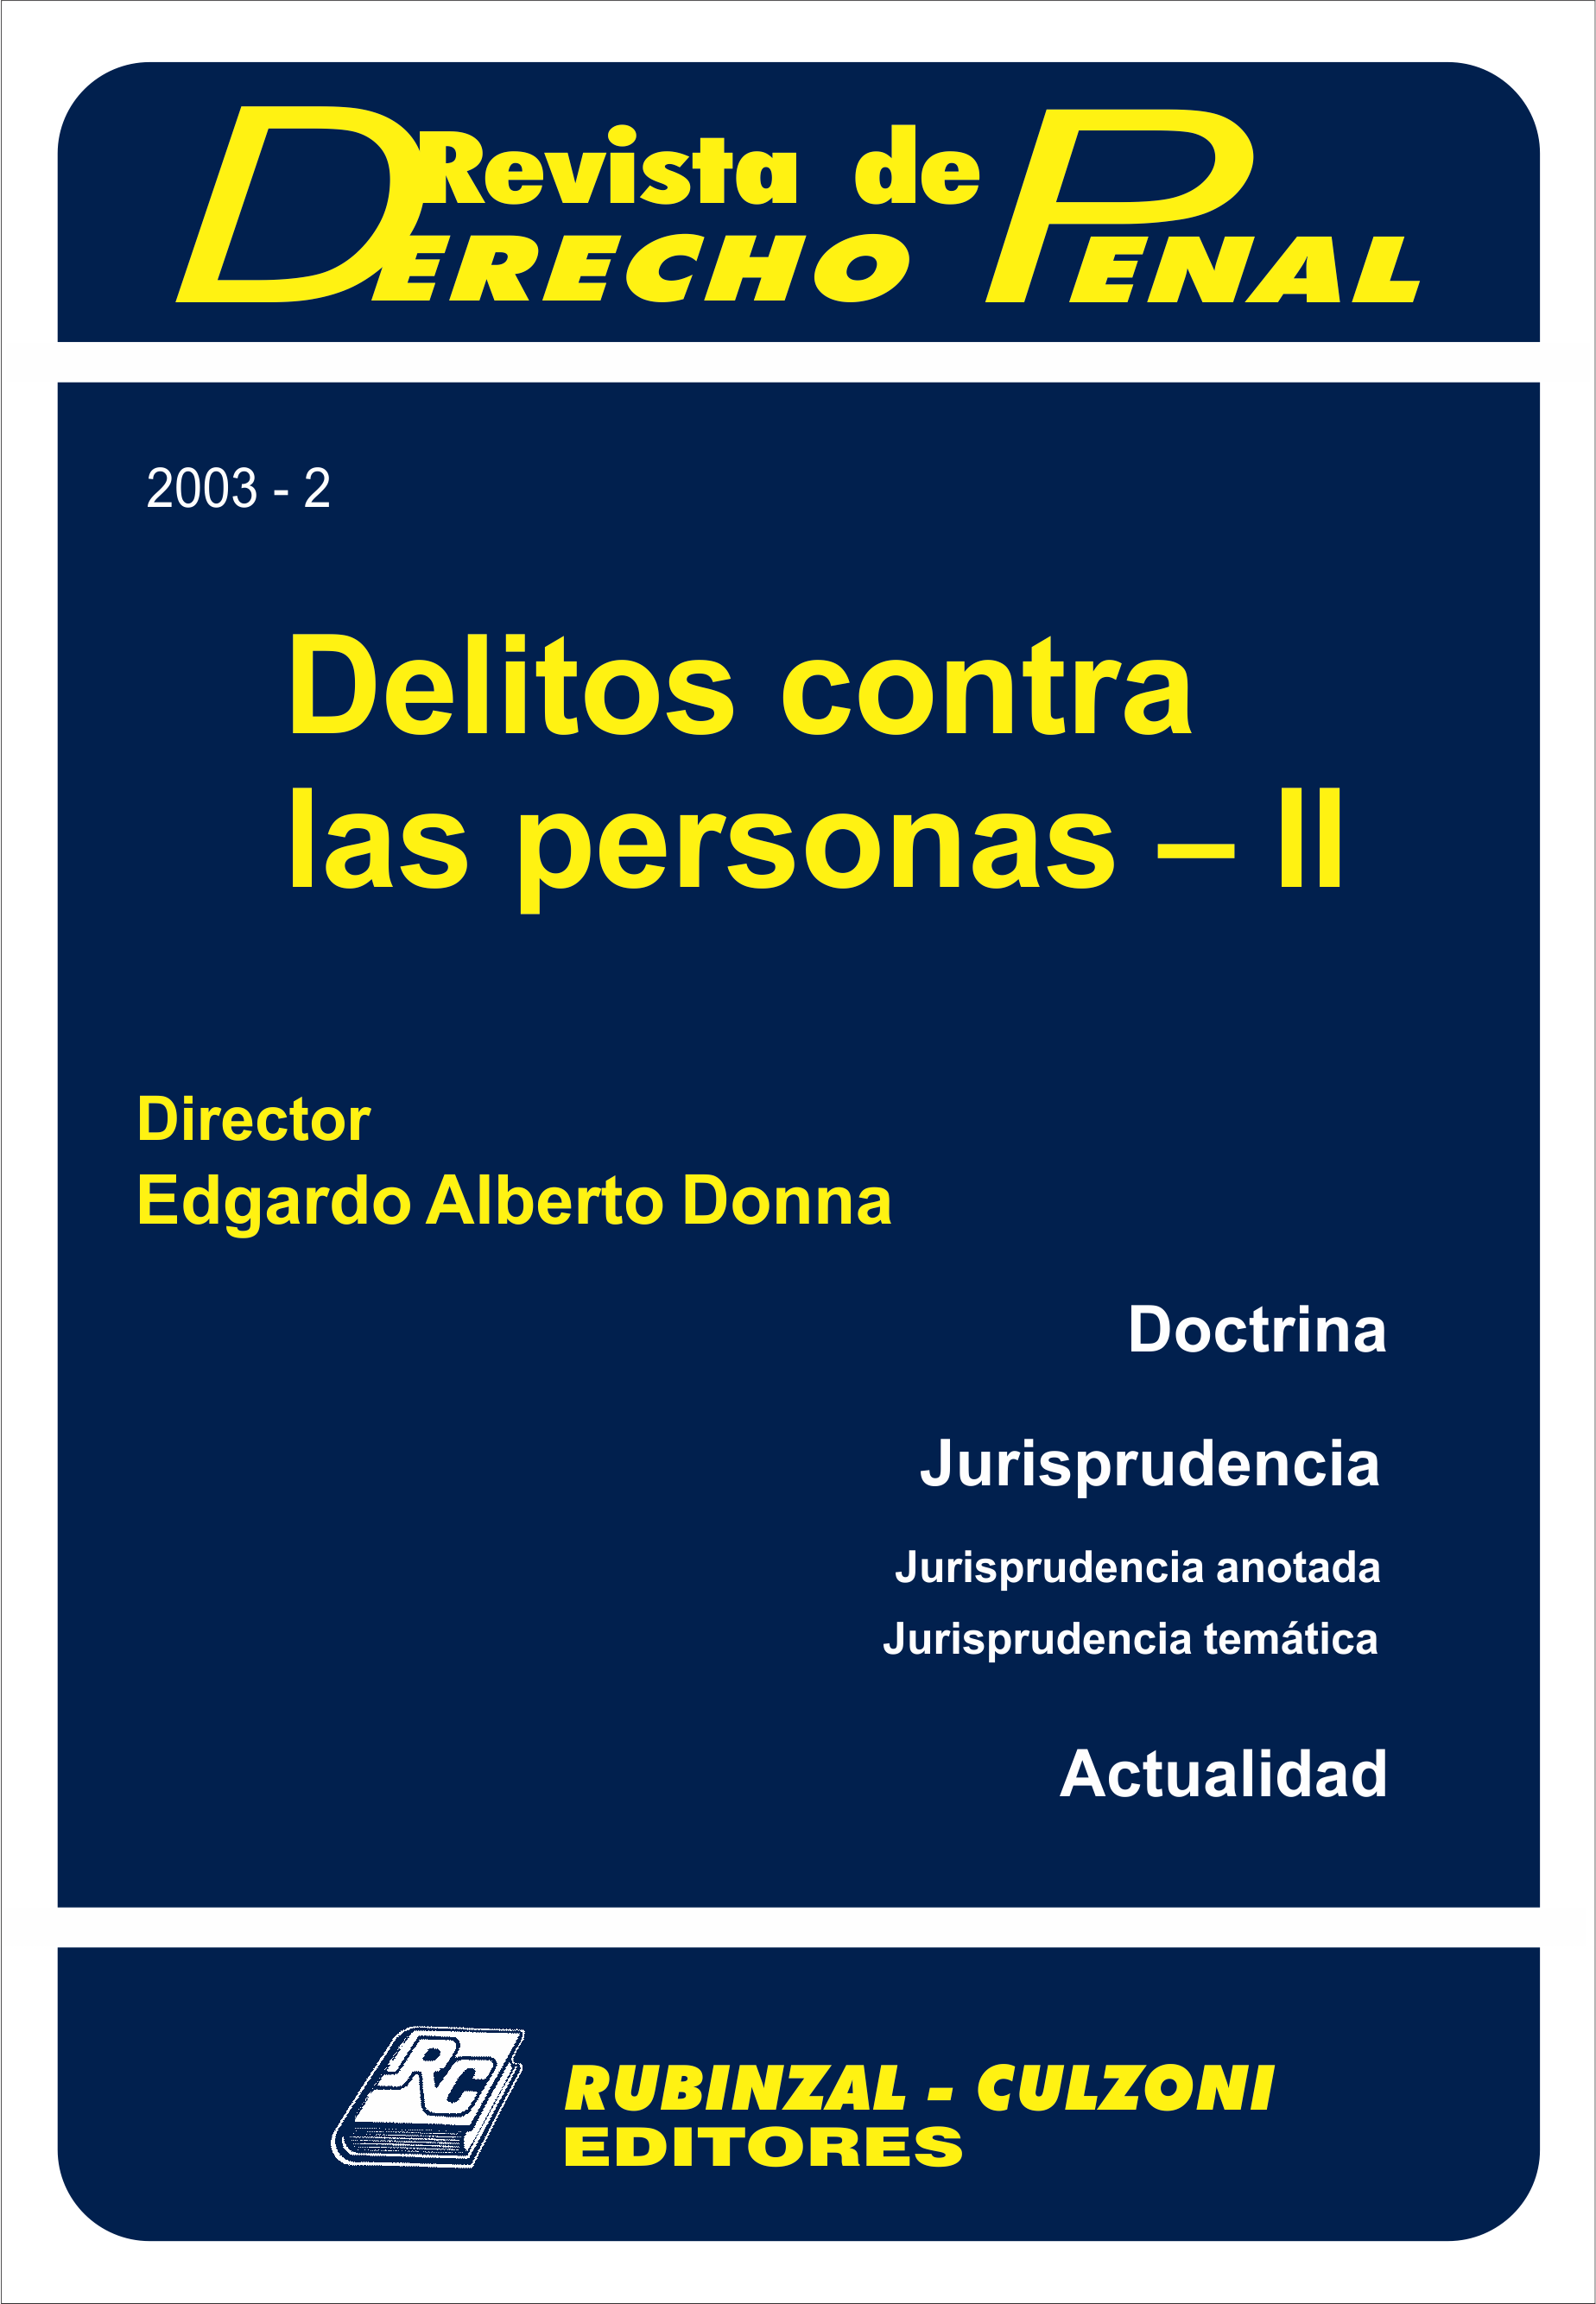 Revista de Derecho Penal - Delitos contra las personas - II